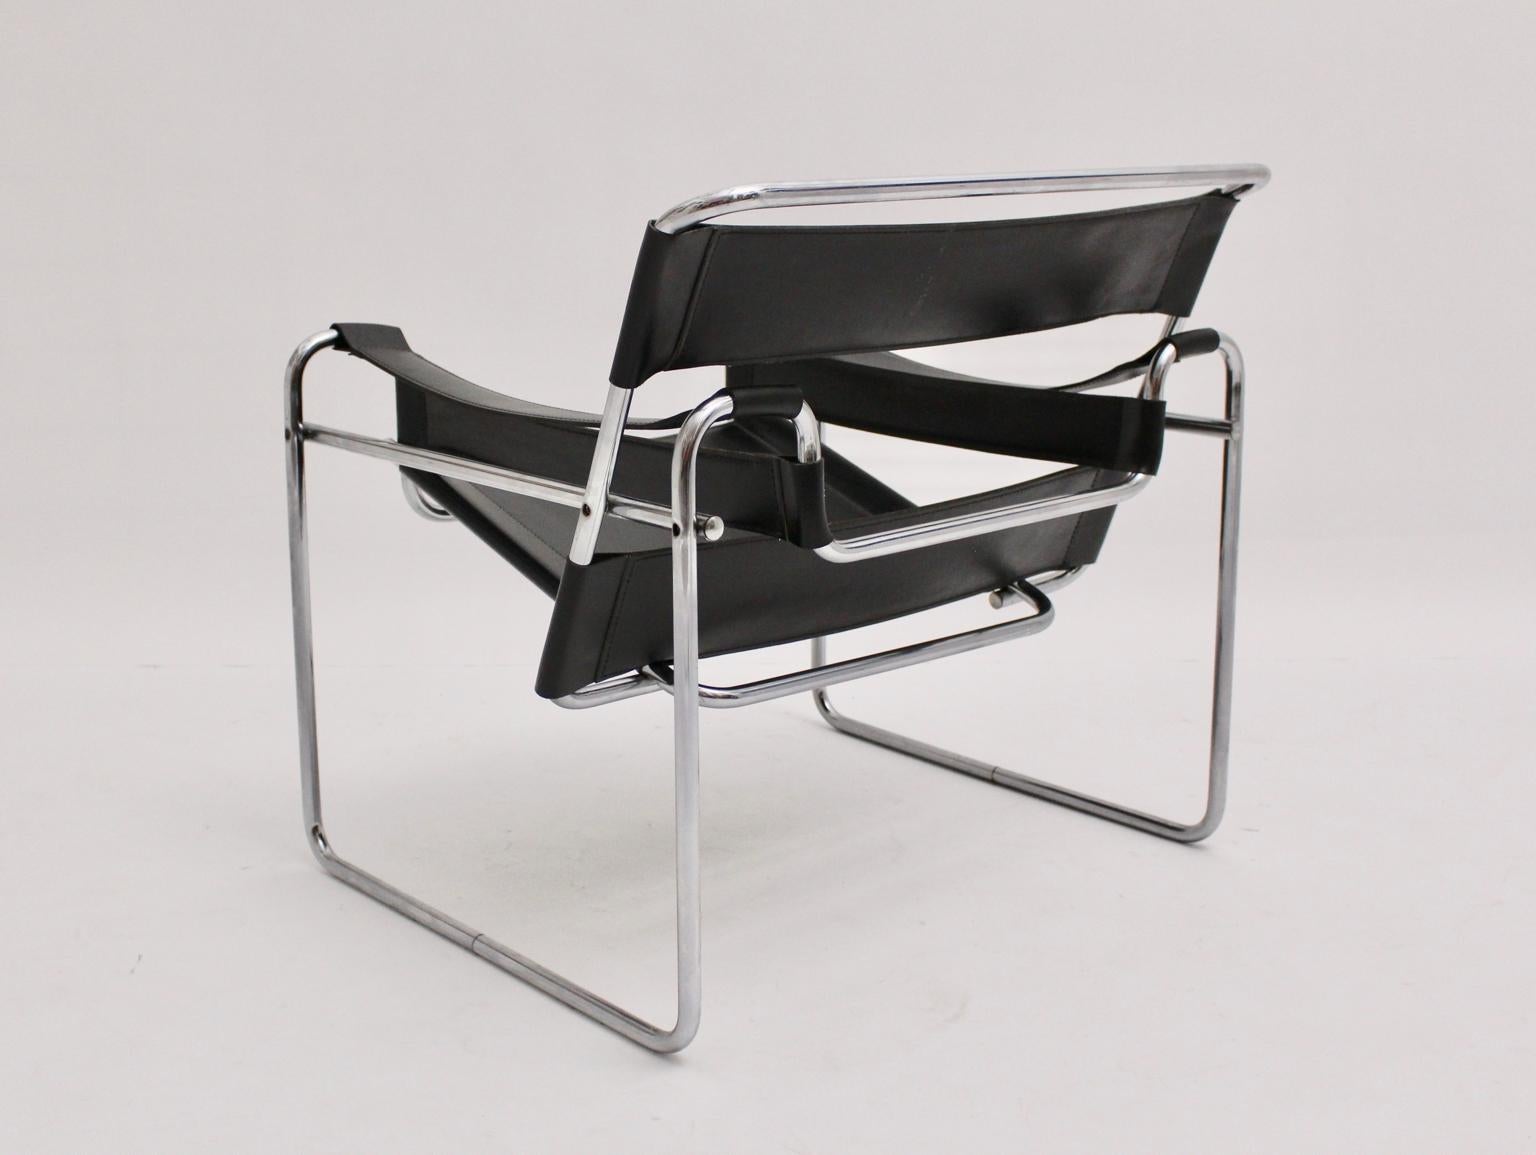 Chaise longue vintage Bauhaus en tube d'acier avec cuir noir modèle Wassily a été conçu par Marcel Breuer 1925 - 27 et probablement exécuté en Italie vers 1970. Il n'y a pas de poinçon du fabricant. 
Le cuir noir est très patiné, tandis que le cadre